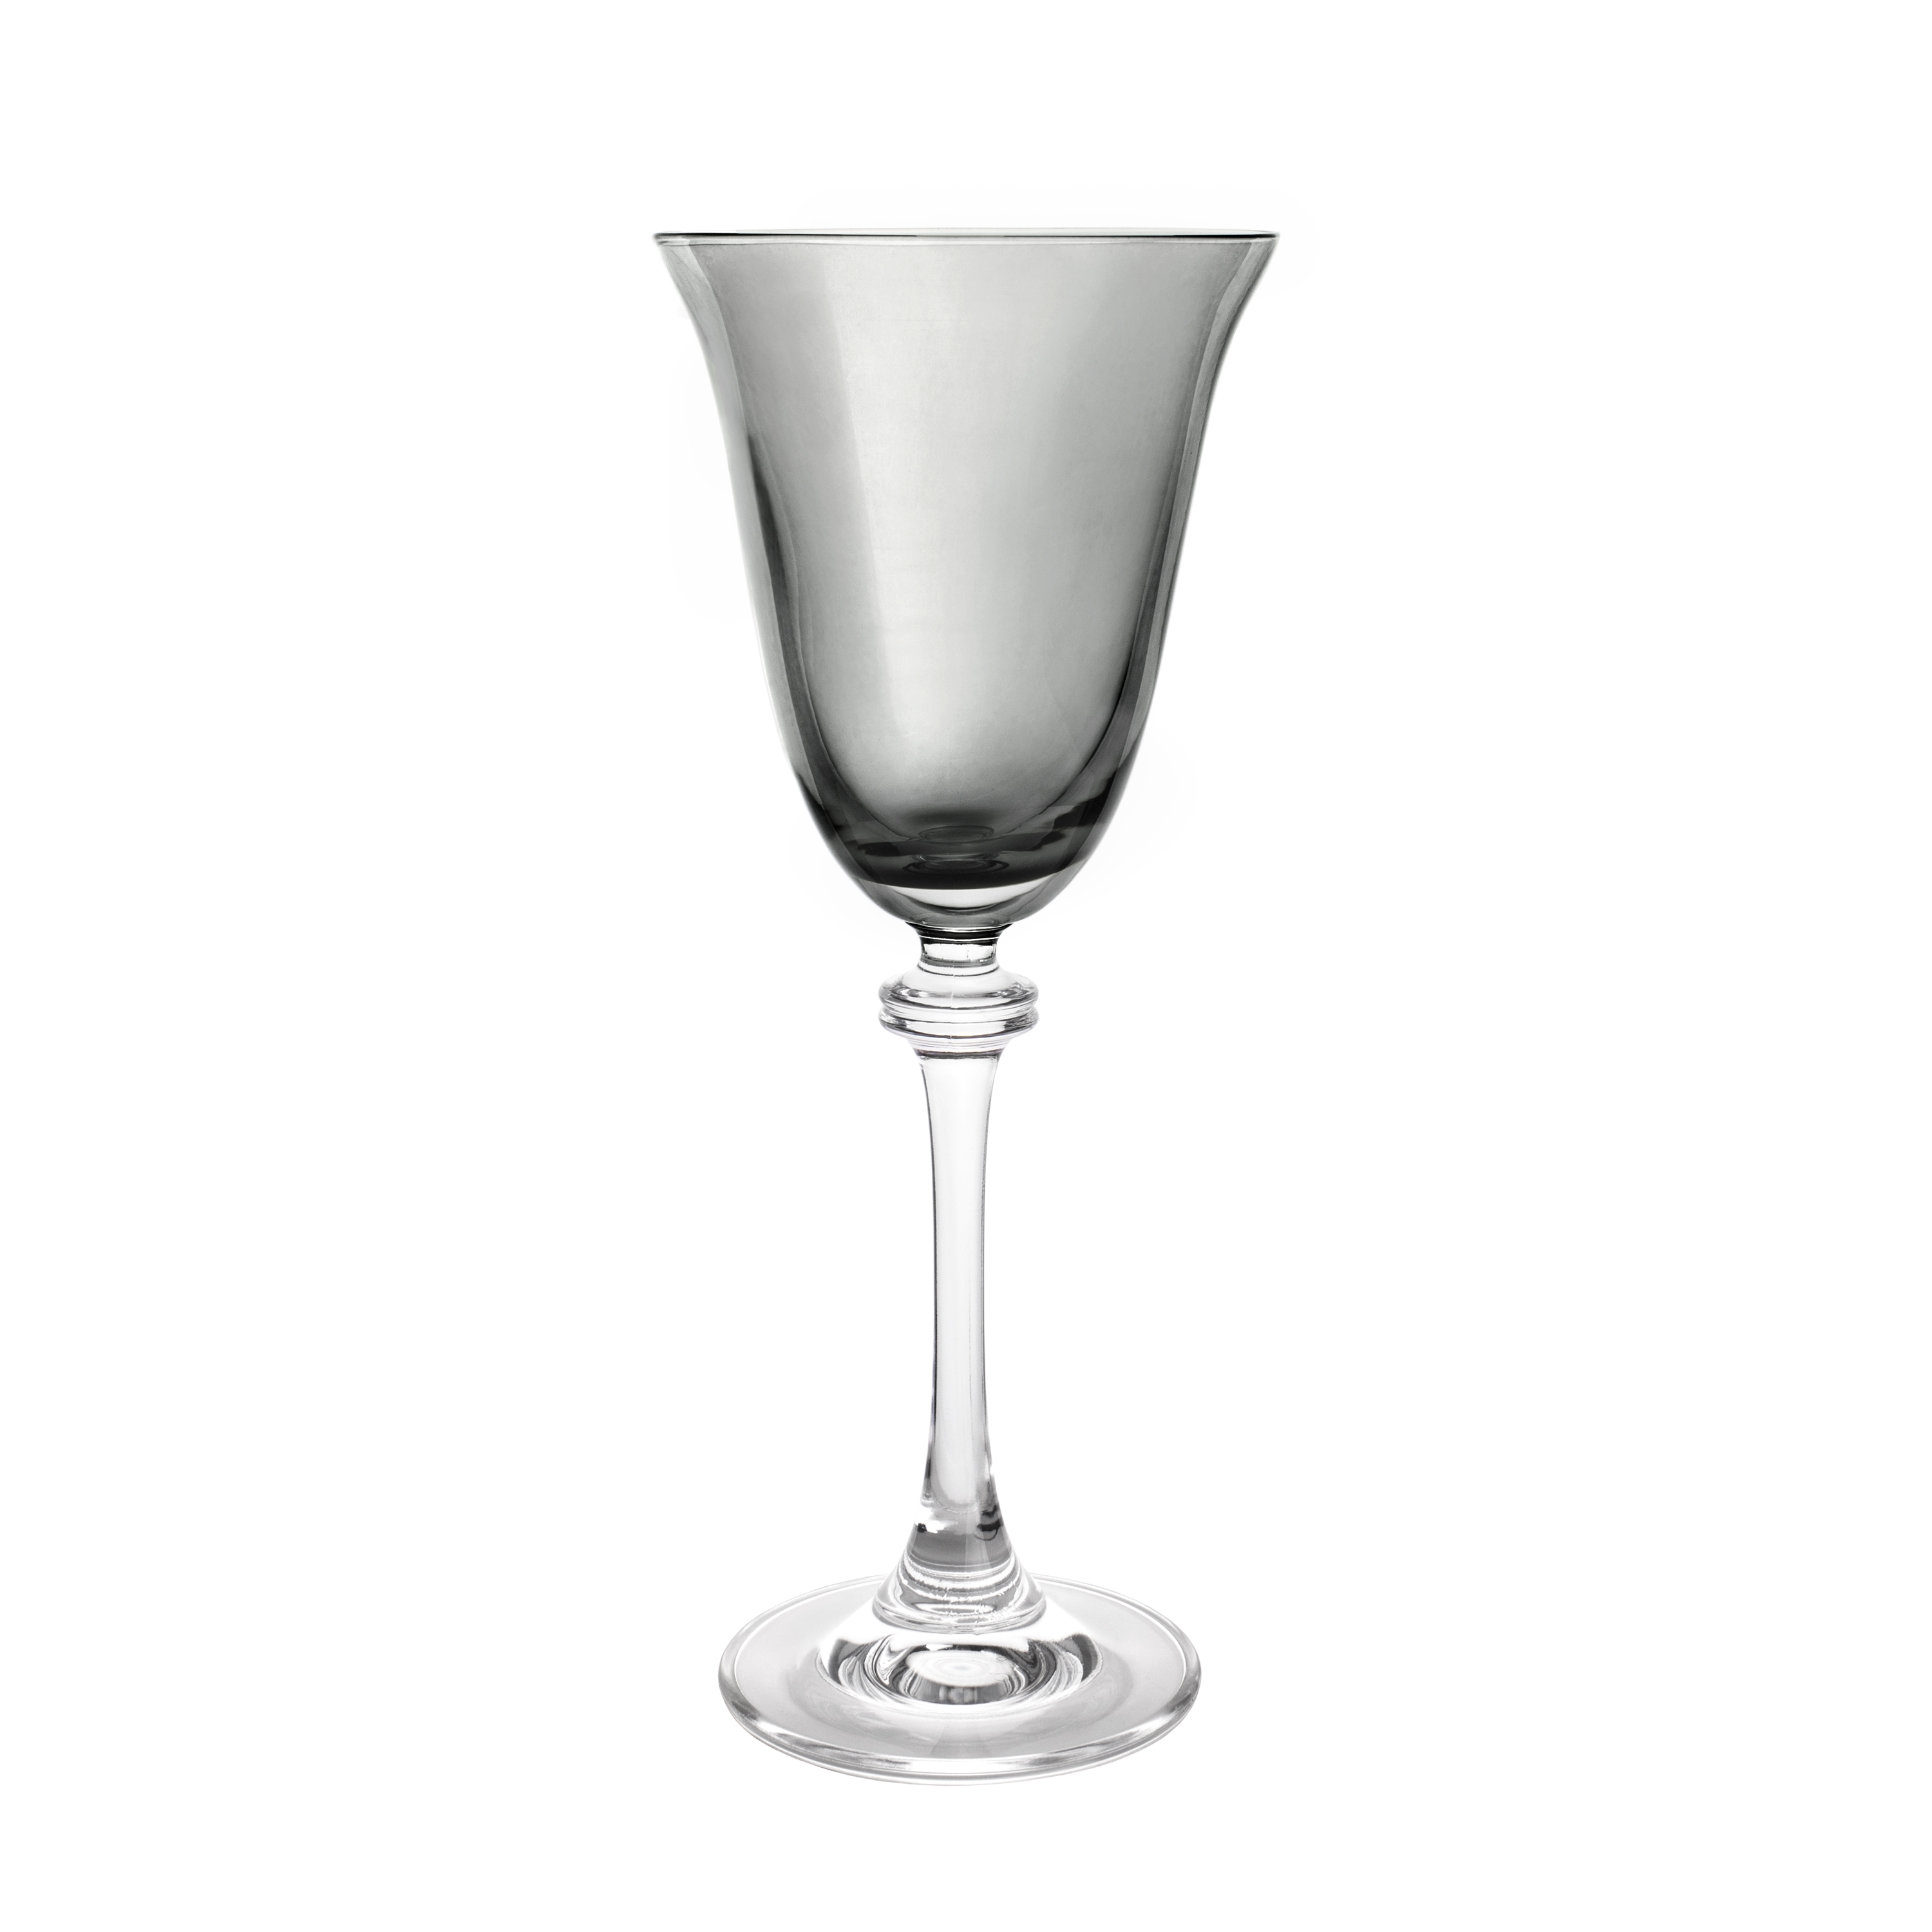 Ποτήρι Κρασιού Κρυστάλλινο Bohemia Grey Asio 185ml CTB71SD70185 (Σετ 6 Τεμάχια) (Υλικό: Κρύσταλλο, Χρώμα: Γκρι, Μέγεθος: Κολωνάτο) – Κρύσταλλα Βοημίας – CTB71SD70185